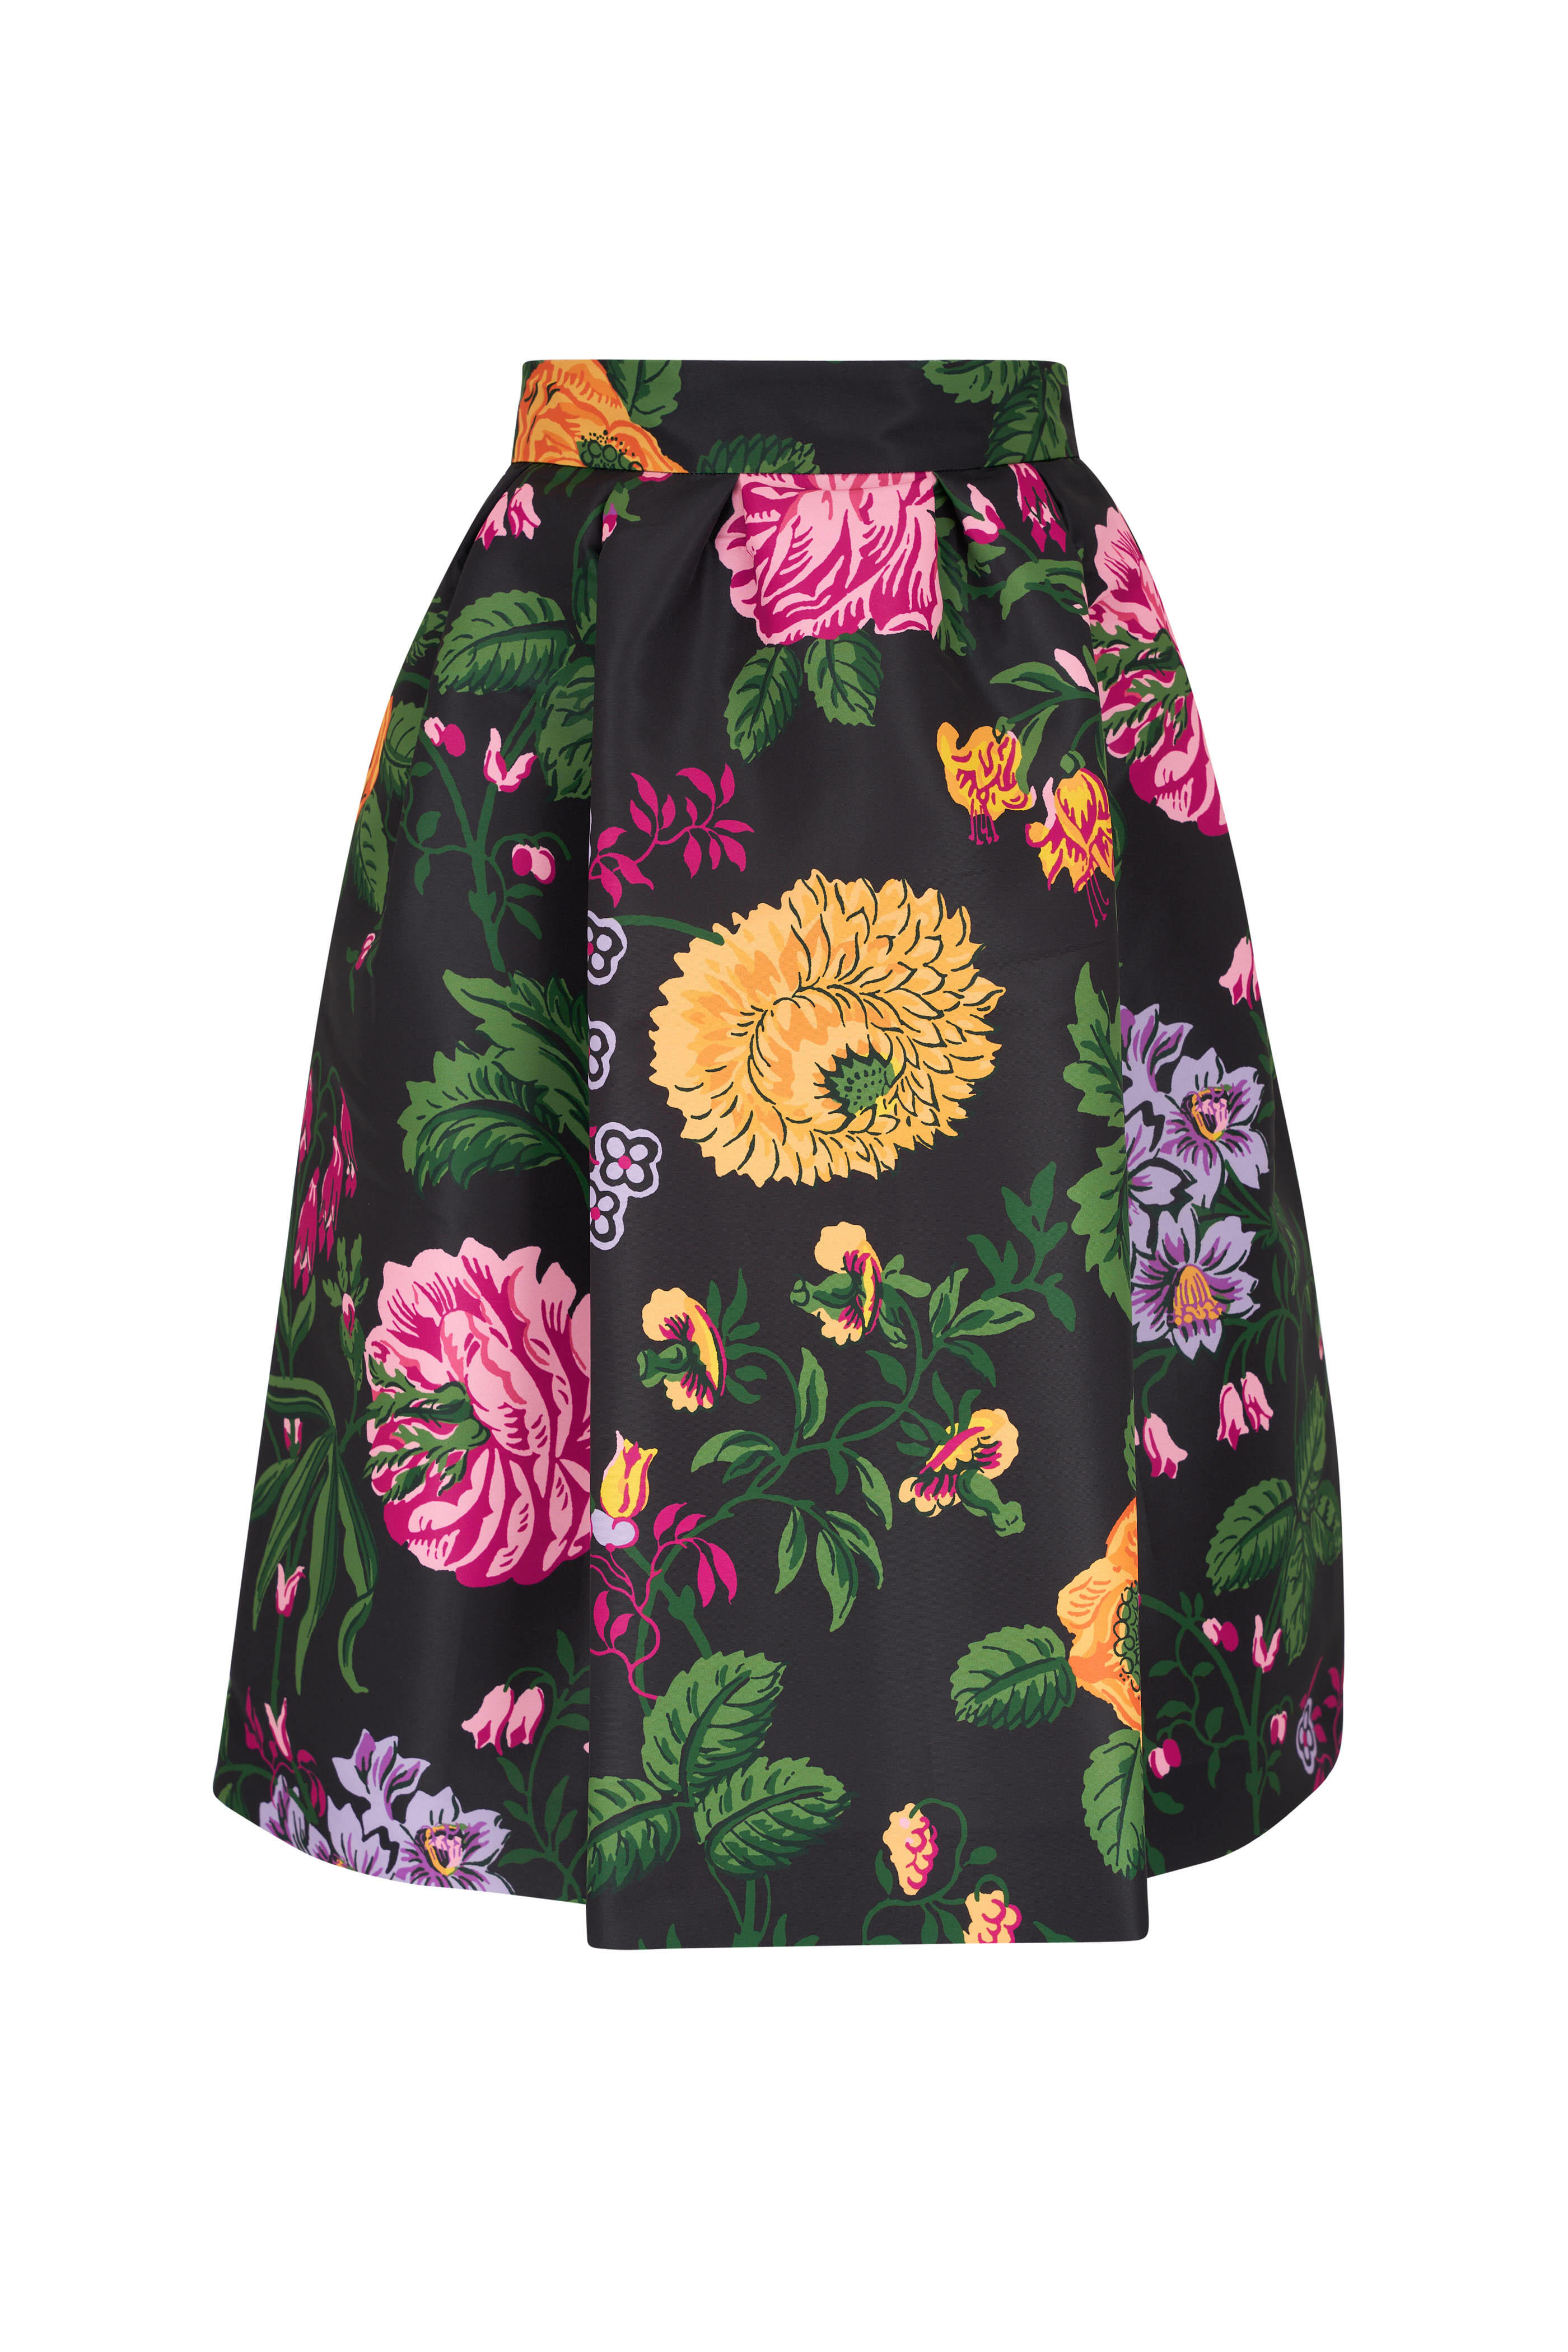 The Floral Print Zip Up Skirt - Black & White Flower Print High Waisted  Midi Skirt - Black - Bottoms